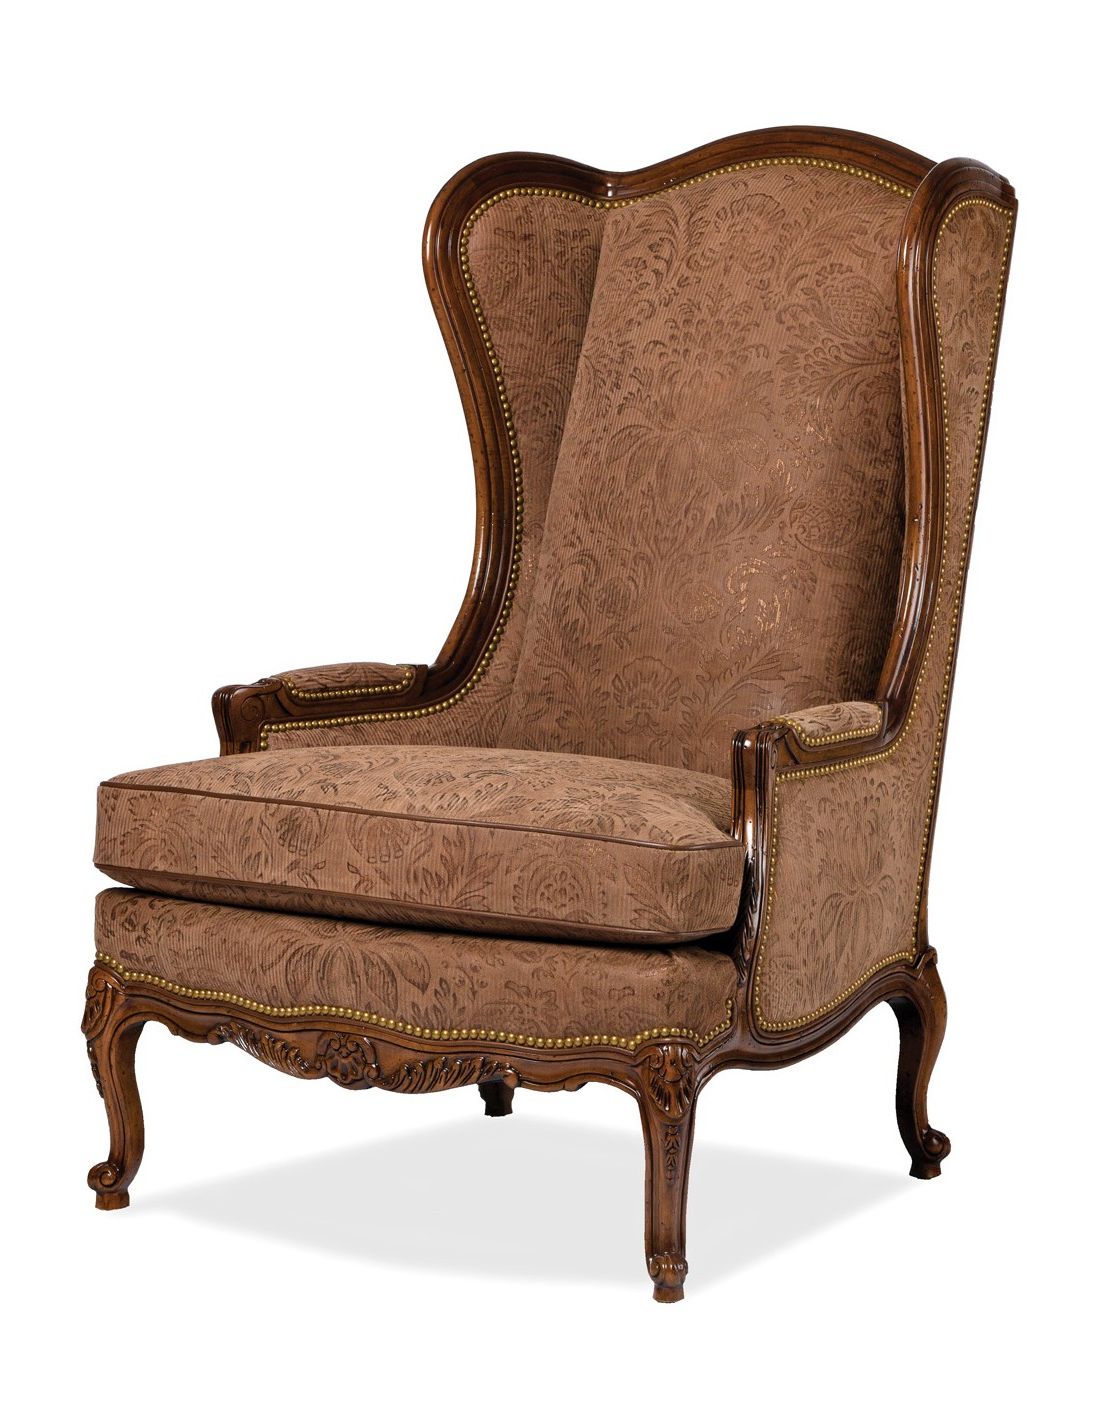 Стул для гостиной с подлокотниками. Кресло Antique Classic 3010. Кресло Хадсон chocolat. Кресло Хиллари Пинскдрев.